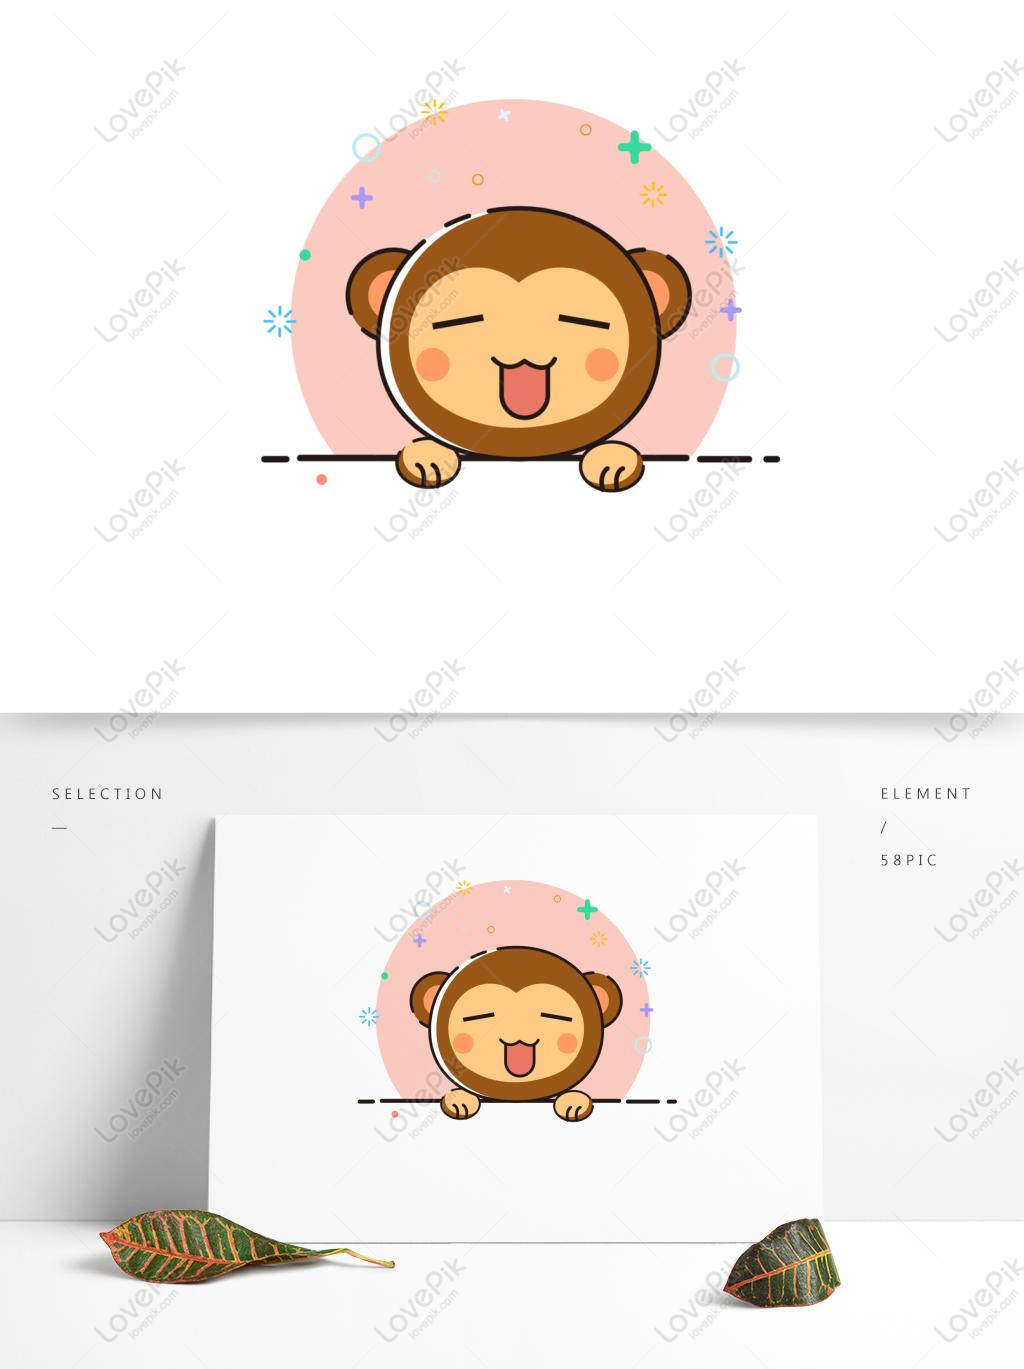 Tìm kiếm icon con khỉ đáng yêu để trang trí cho trang web hoặc ứng dụng của mình? Hãy tìm hiểu và chọn lựa icon với hình ảnh chú khỉ dễ thương để thu hút mọi người.